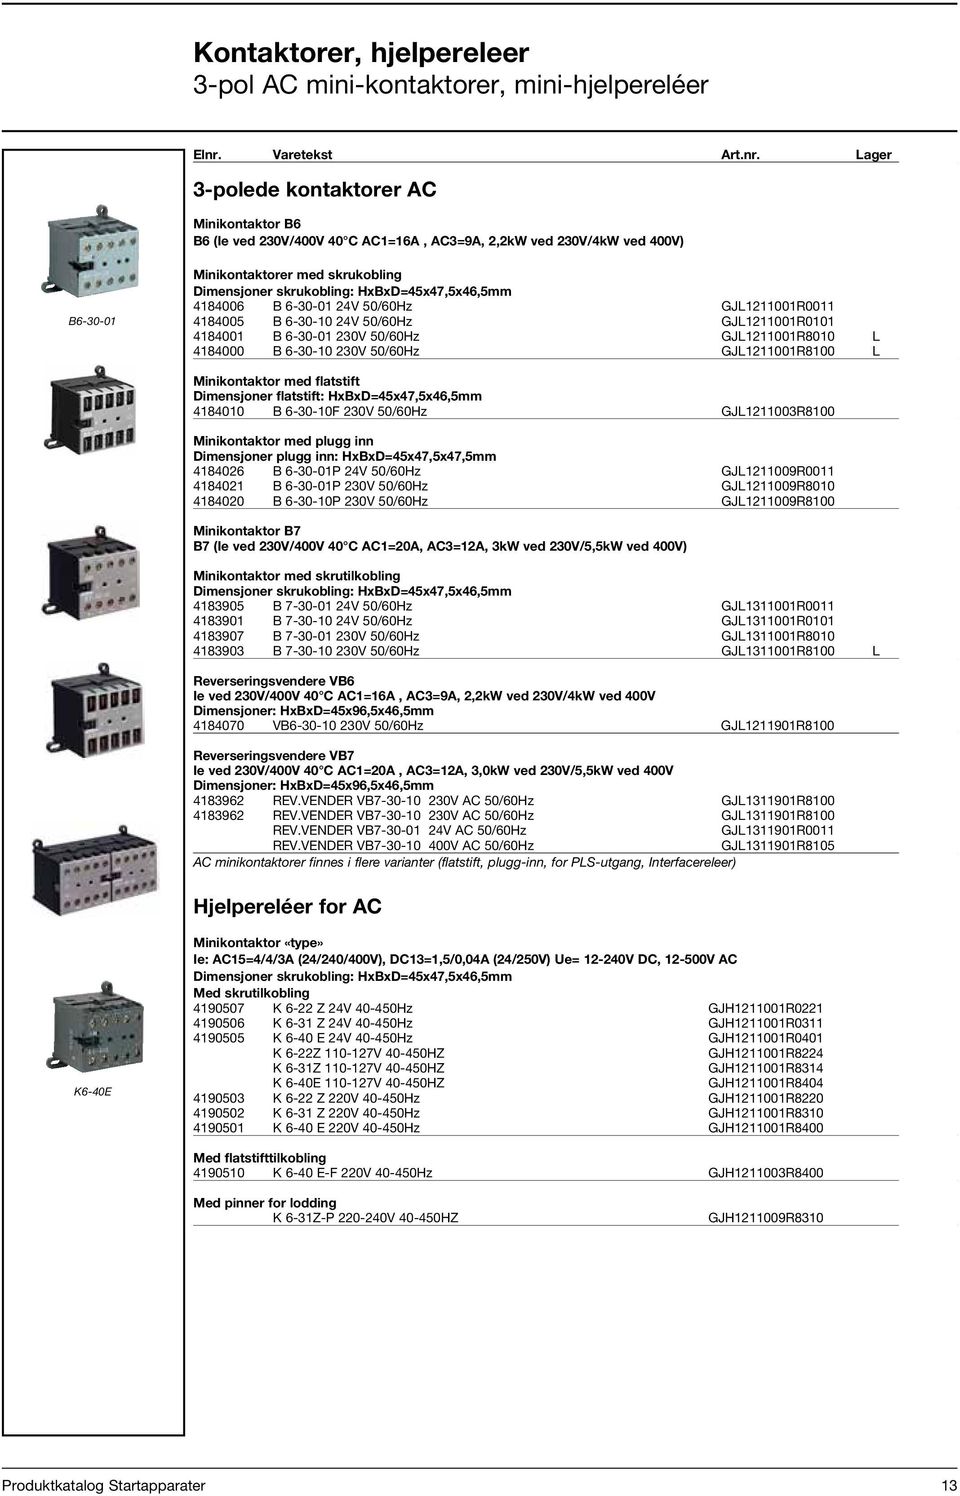 Lager Pris 3-polede kontaktorer AC Minikontaktor B6 B6 (Ie ved 230V/400V 40 C AC1=16A, AC3=9A, 2,2kW ved 230V/4kW ved 400V) B6-30-01 Minikontaktorer med skrukobling Dimensjoner skrukobling: